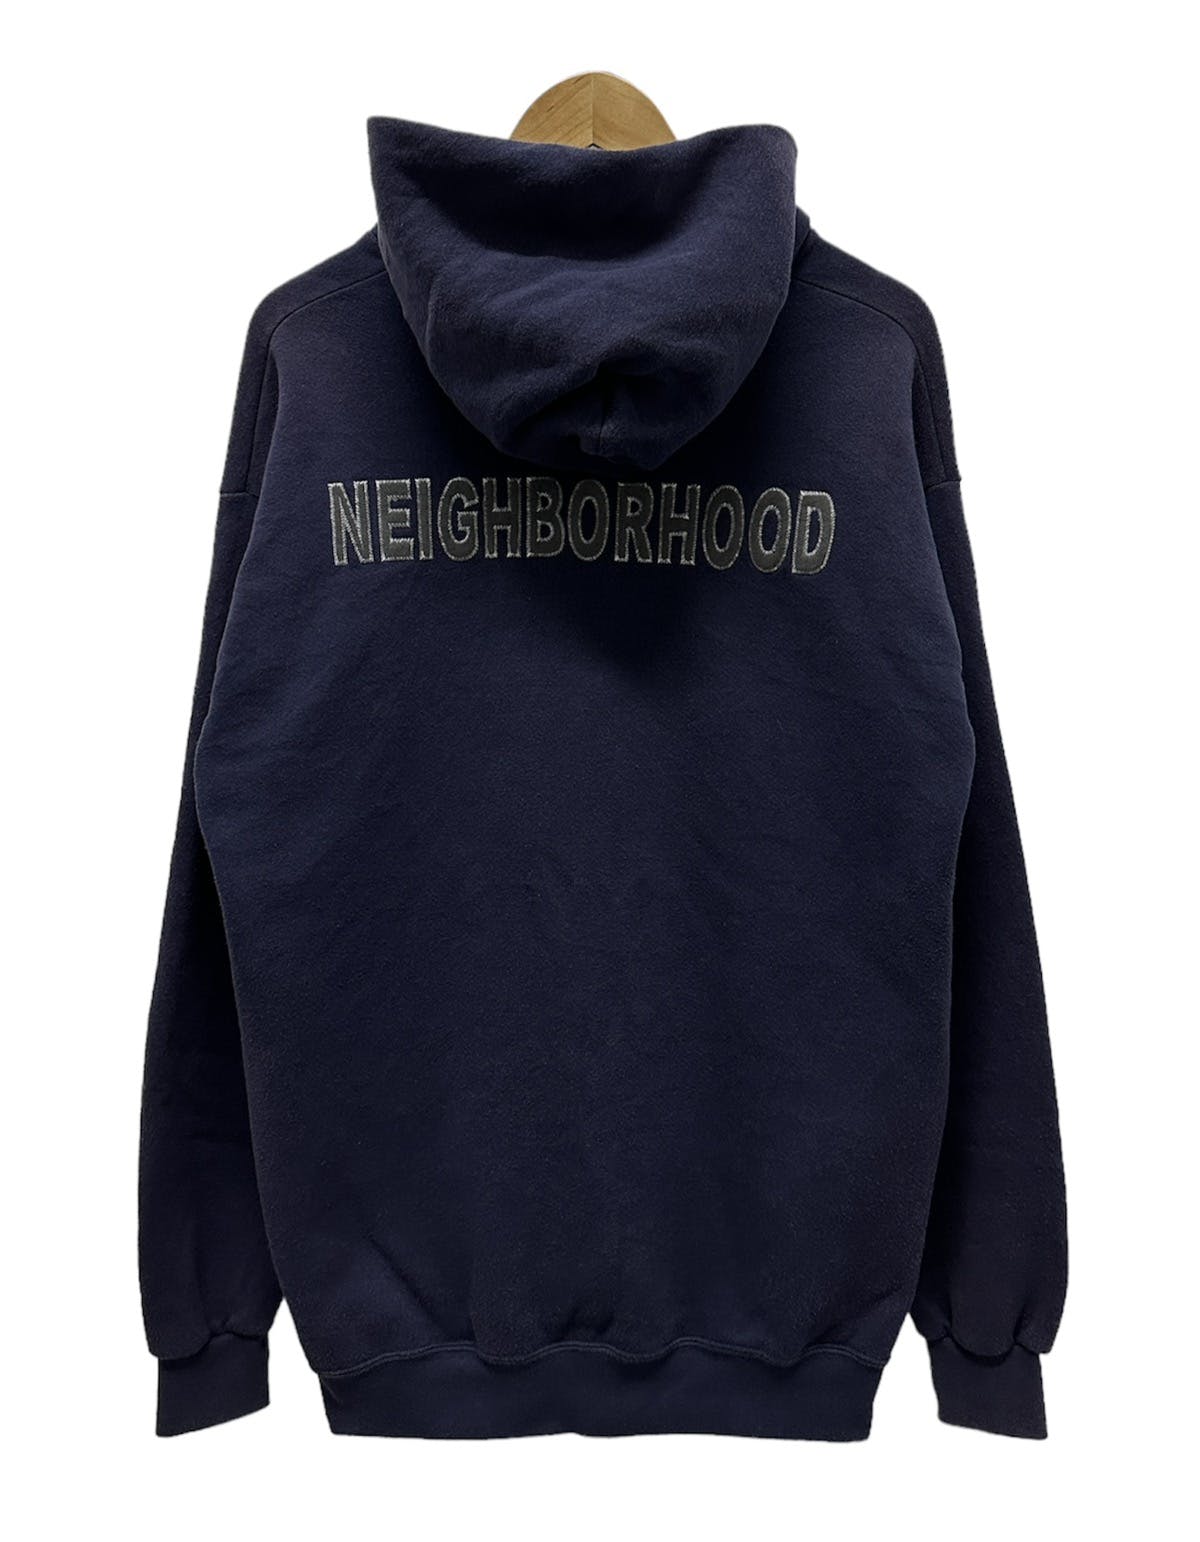 NEIGHBOURHOOD HOODIE - 1